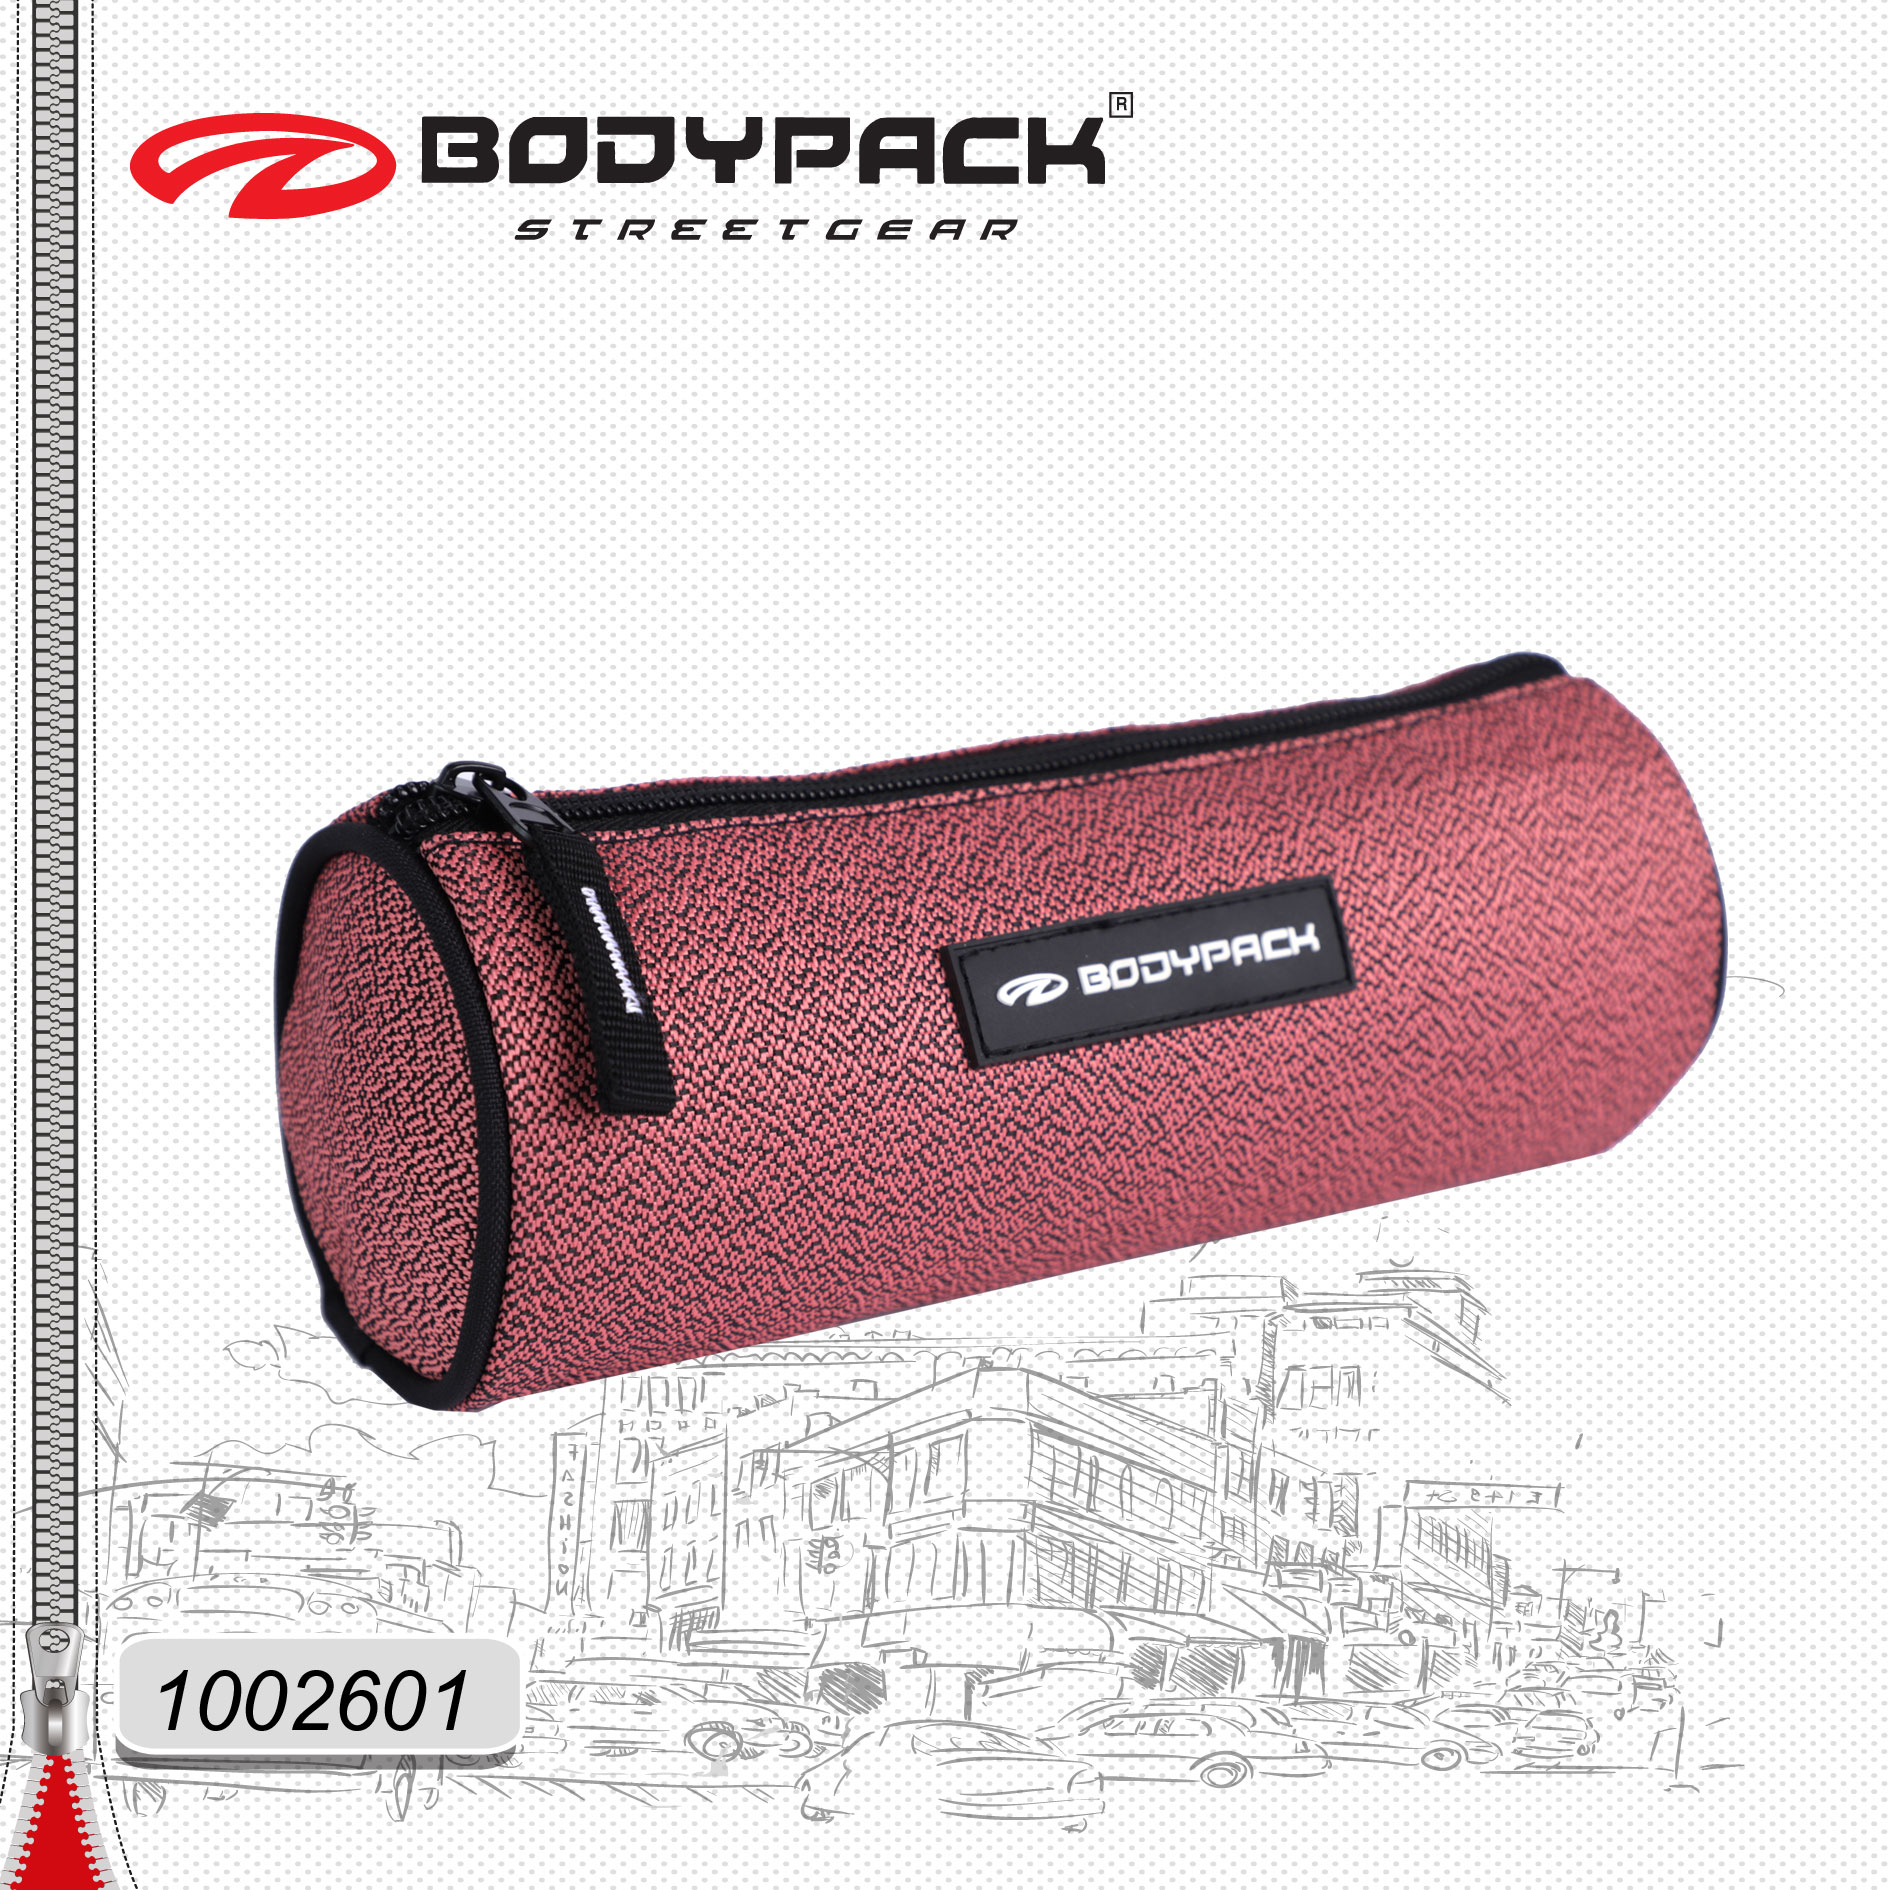 Bodypack - Der Vergleichssieger unter allen Produkten